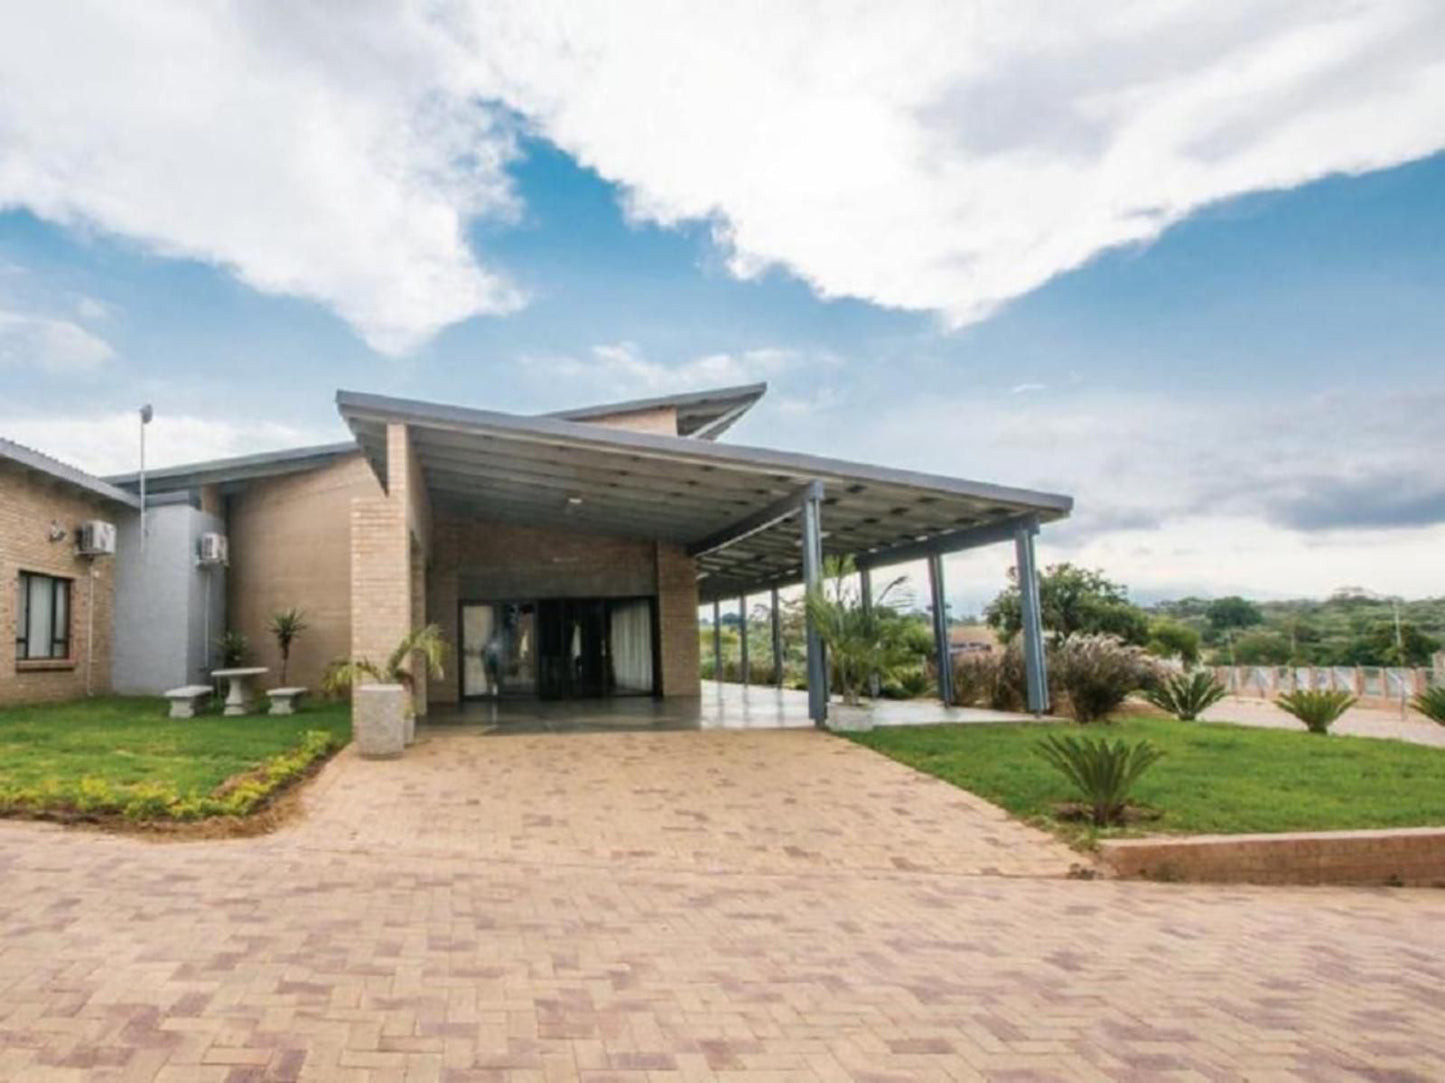 Hoyohoyo Acorns Lodge Acornhoek Mpumalanga South Africa House, Building, Architecture